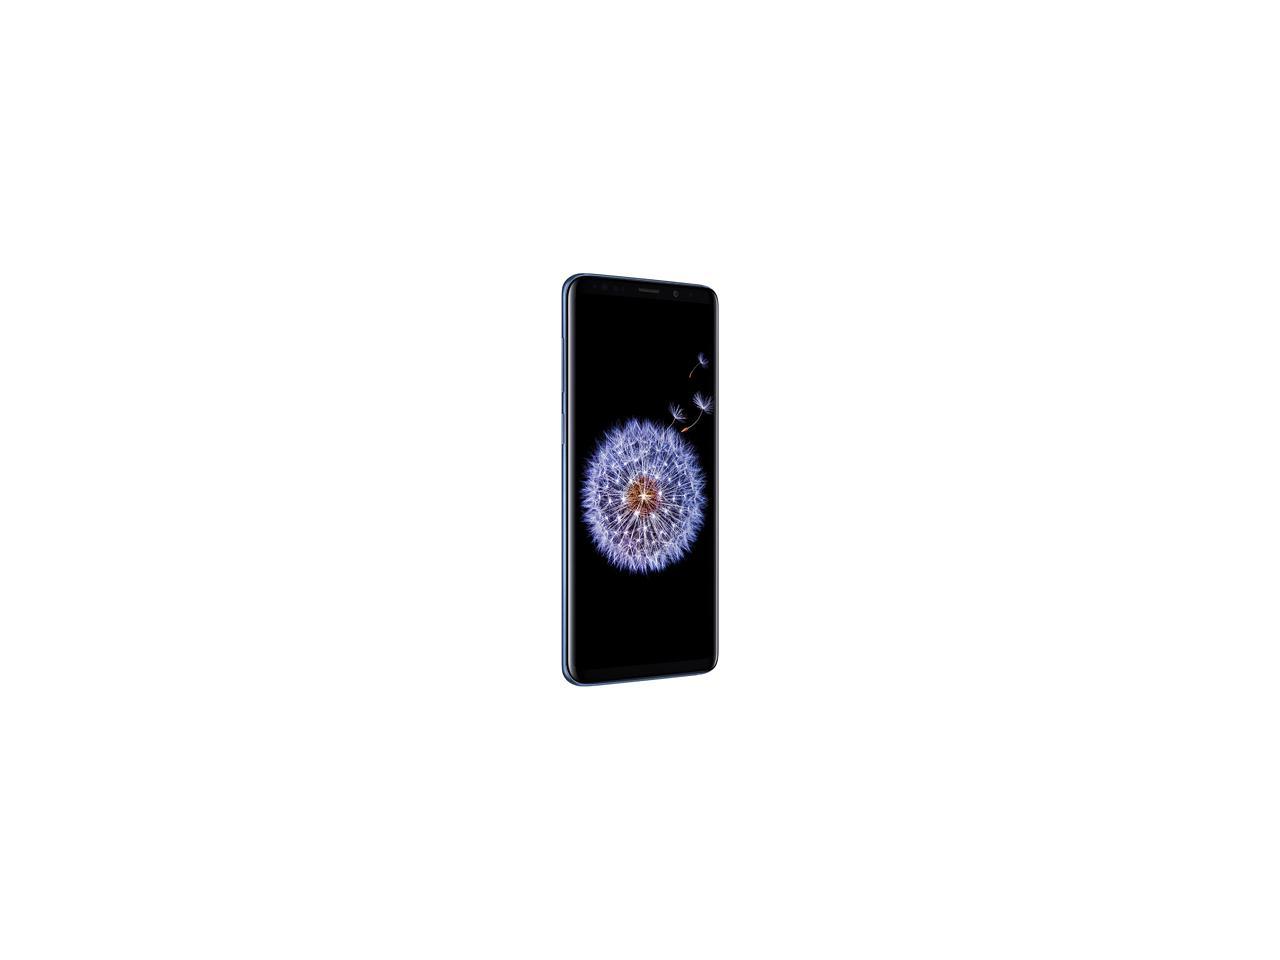 Samsung Galaxy S9+ G965U 4G LTE Unlocked GSM Phone w/ Dual 12 MP Camera - (Used) 6.2" Coral Blue 64GB 6GB RAM